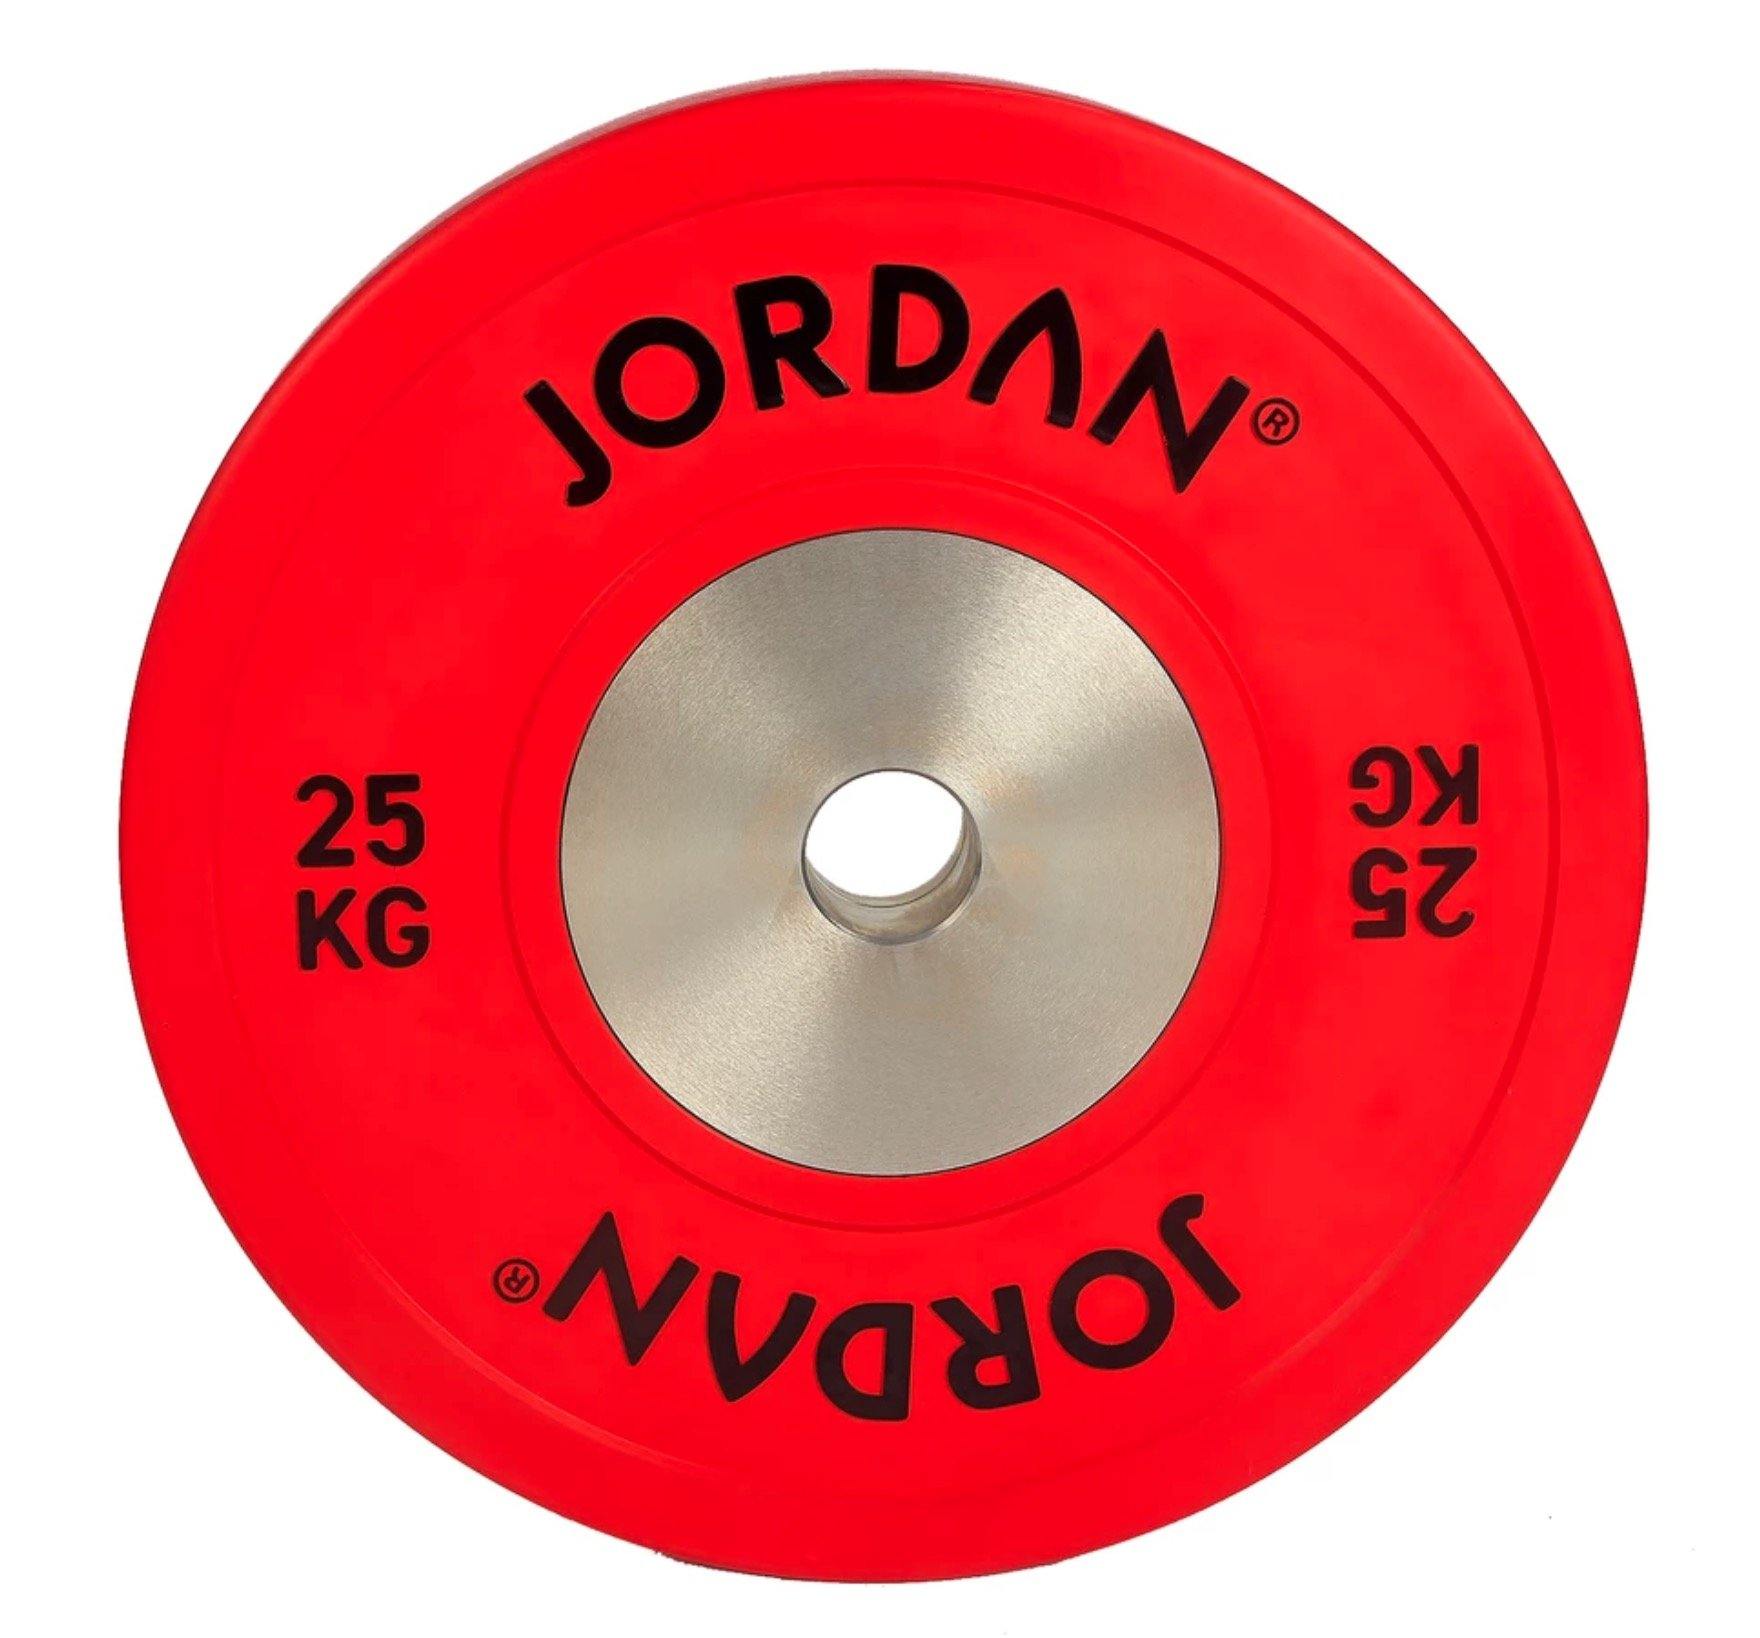 Jordan Bumper Plates